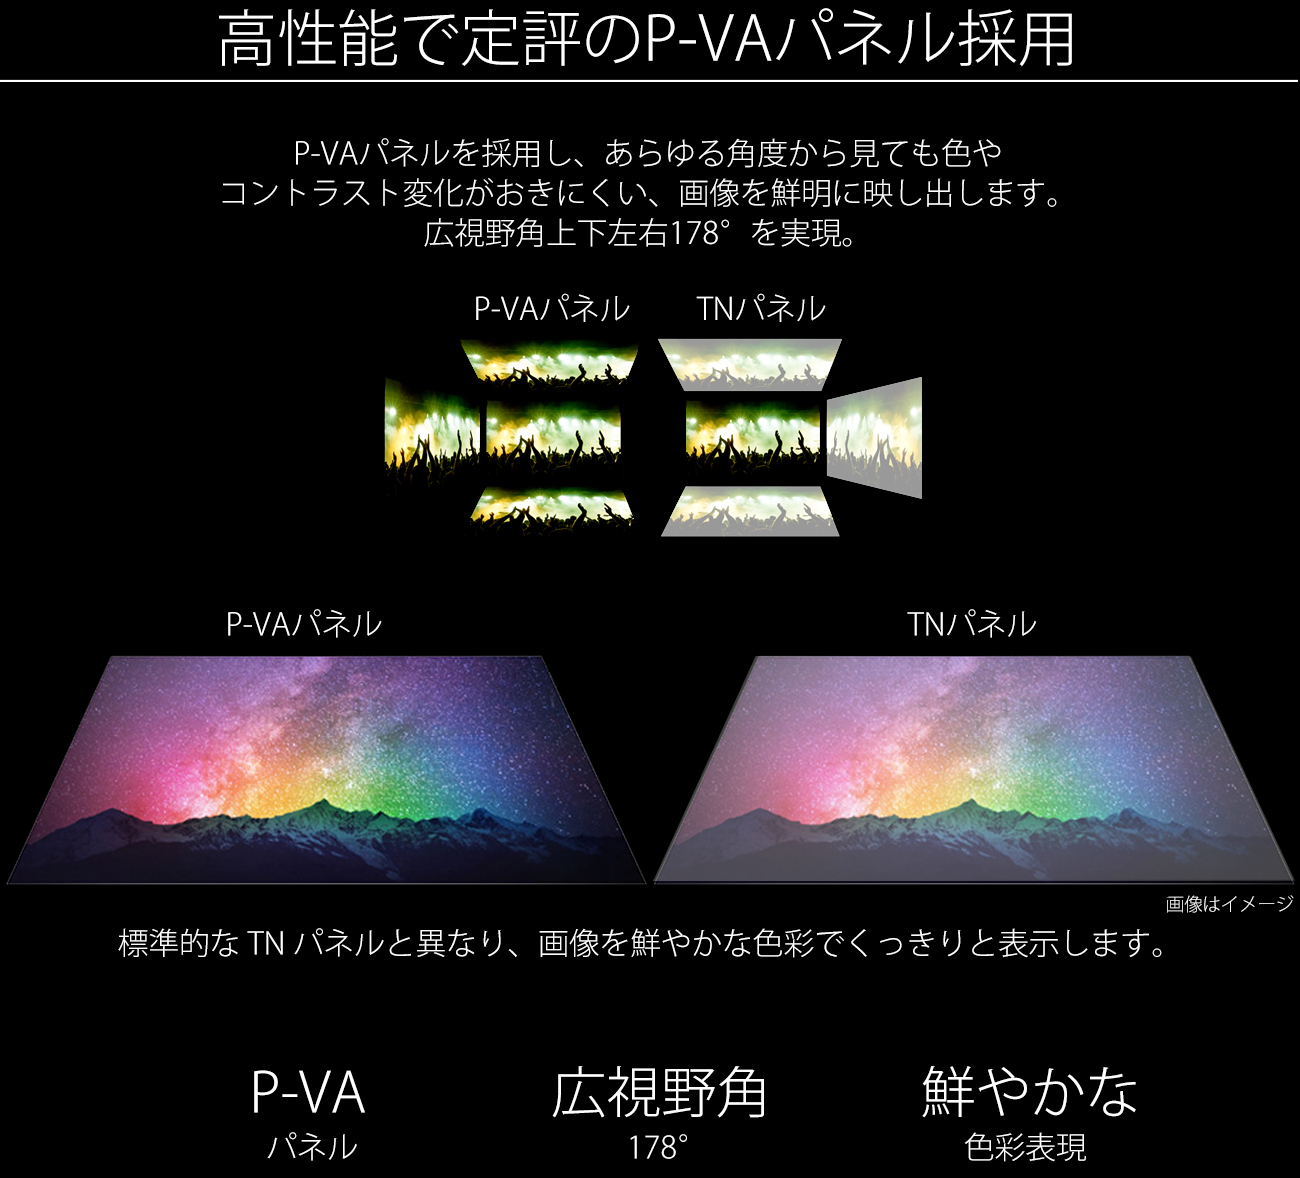 高性能で定評のVAパネル採用。VAパネルを採用し、あらゆる角度から見ても色やコントラスト変化がおきにくい、画像を鮮明に映し出します。広視野角上下左右178°を実現。VA系パネルは標準的な TN パネルと異なり、画像を鮮やかな色彩でくっきりと表示します。快適な写真鑑賞やウェブブラウズができるのたけでなく、色の正確性や一貫した明るさを常に求める専門用途にも最適です。VA 広視野角 3840x2160pixels UHD 4Kパネル 178°解像度。